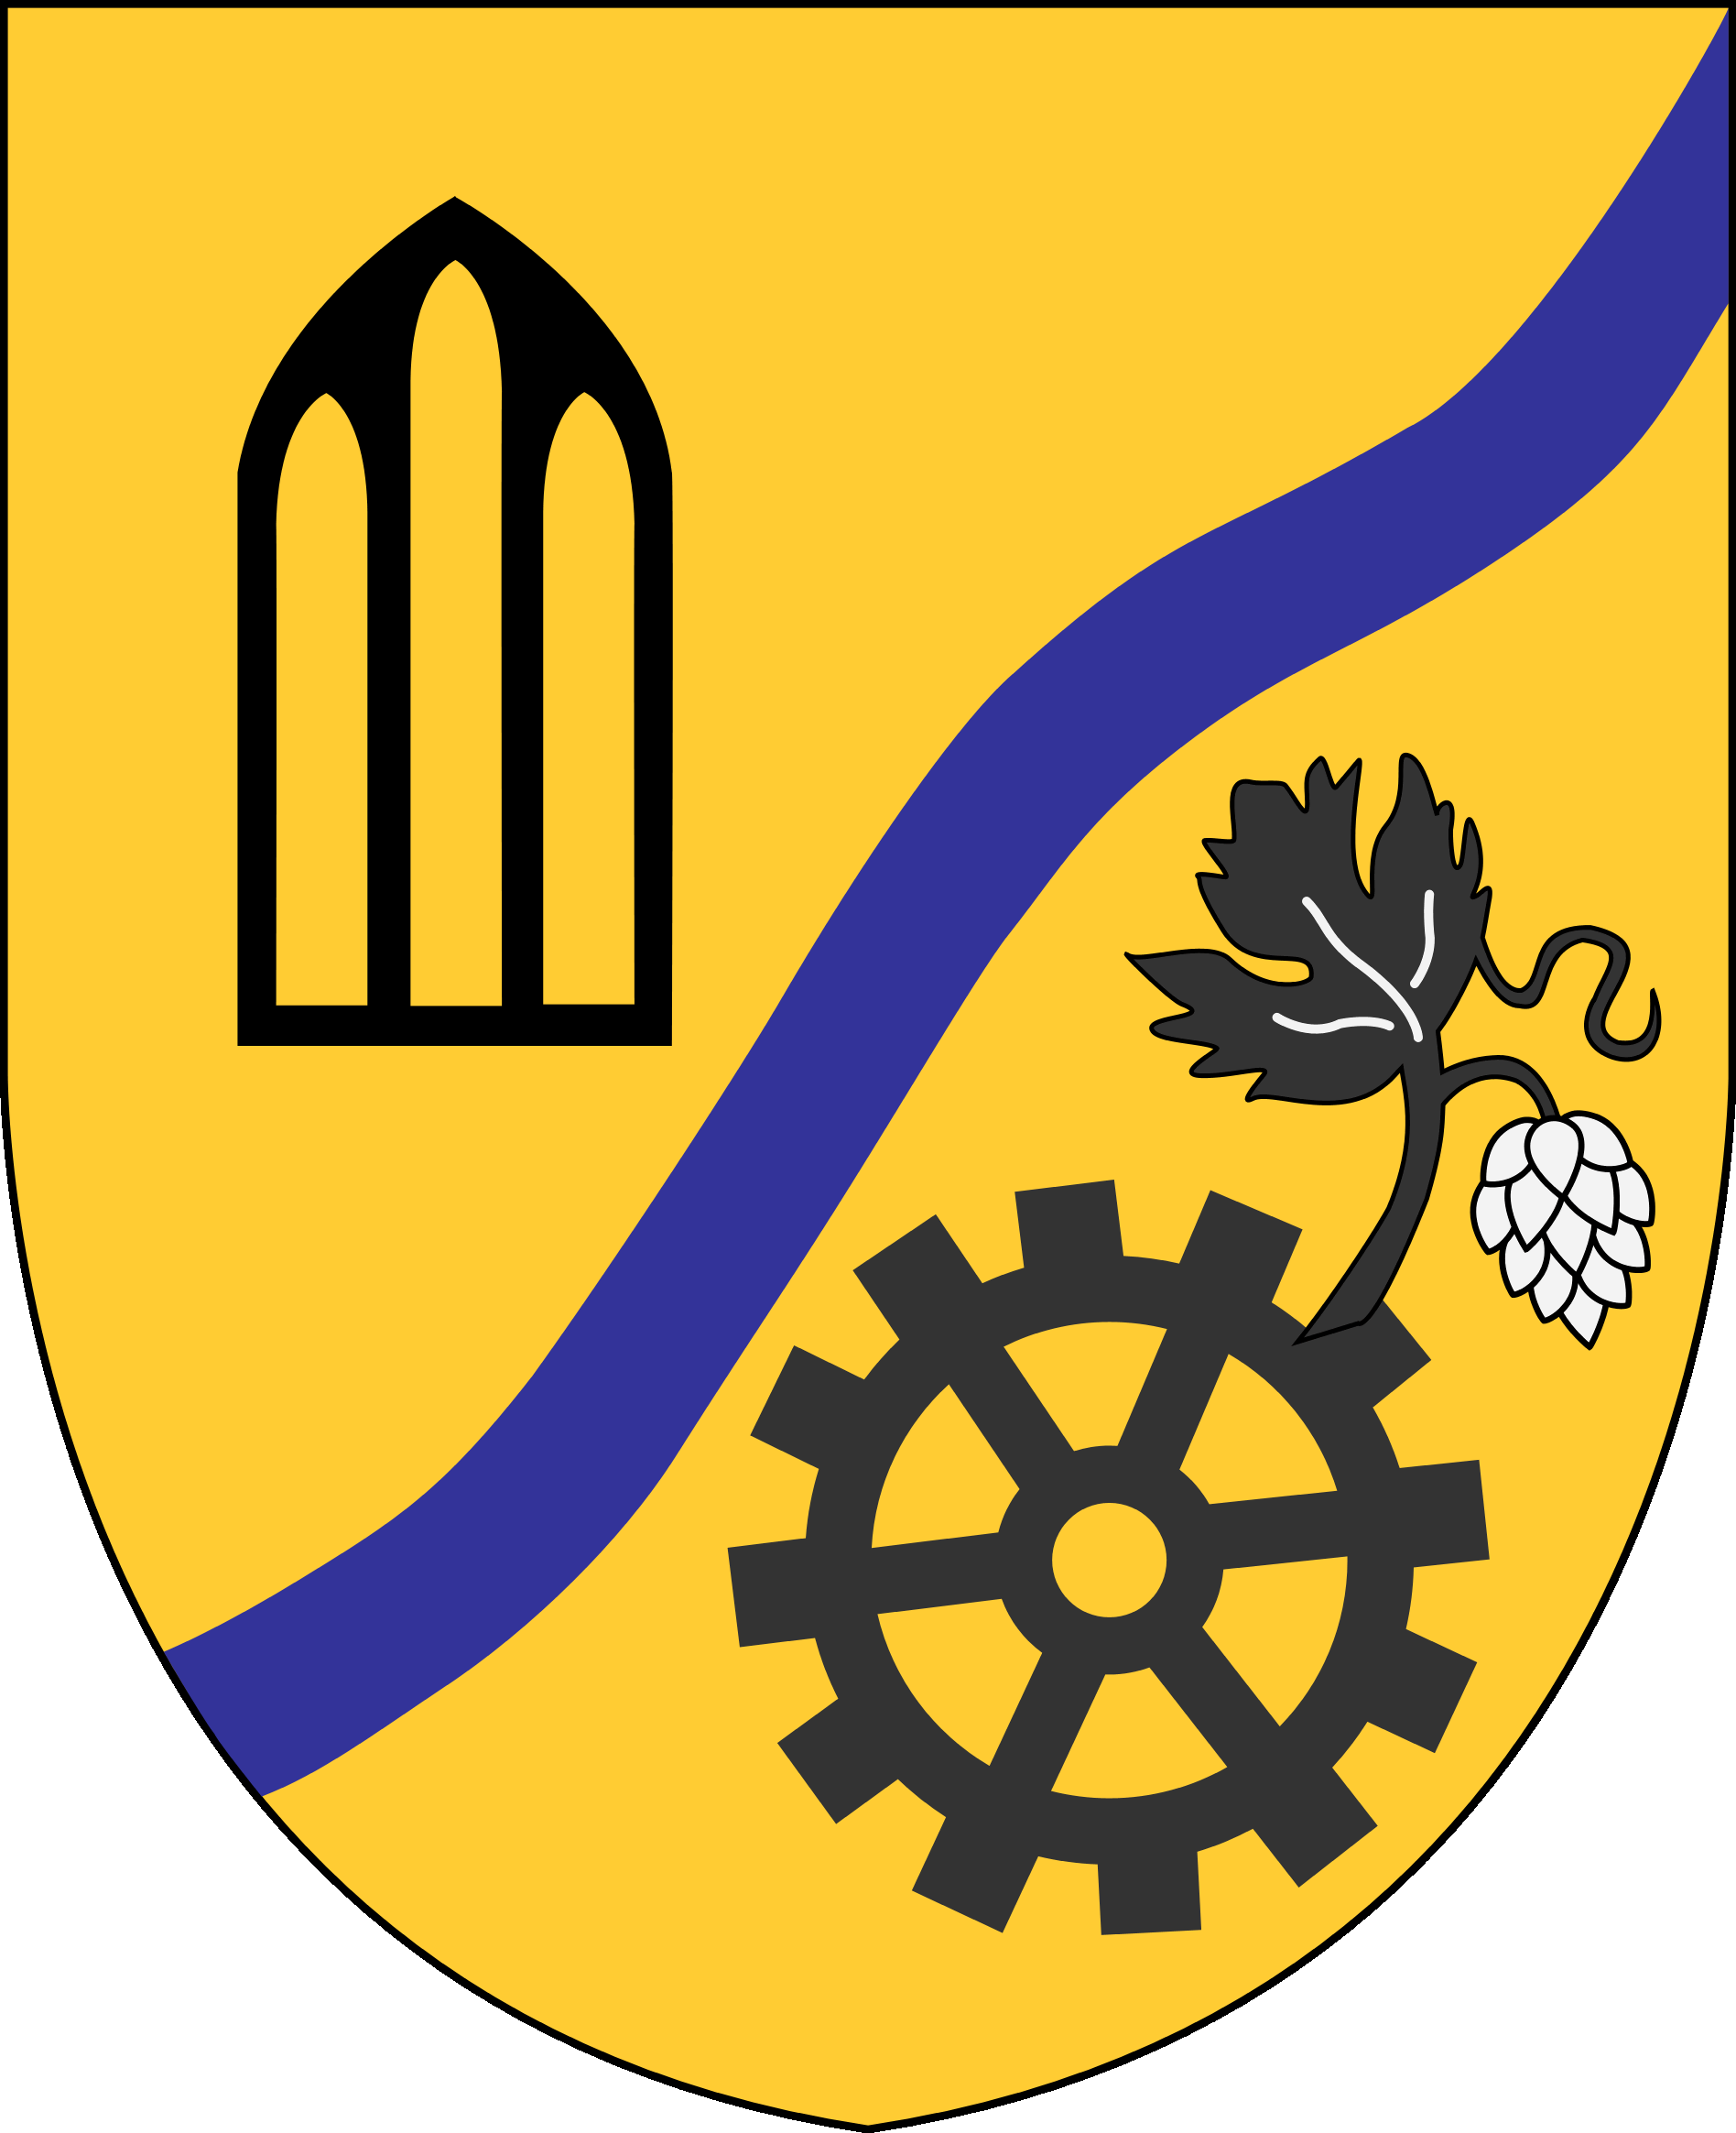 Bild vergrern: Wappen der Gemeinde Rhn